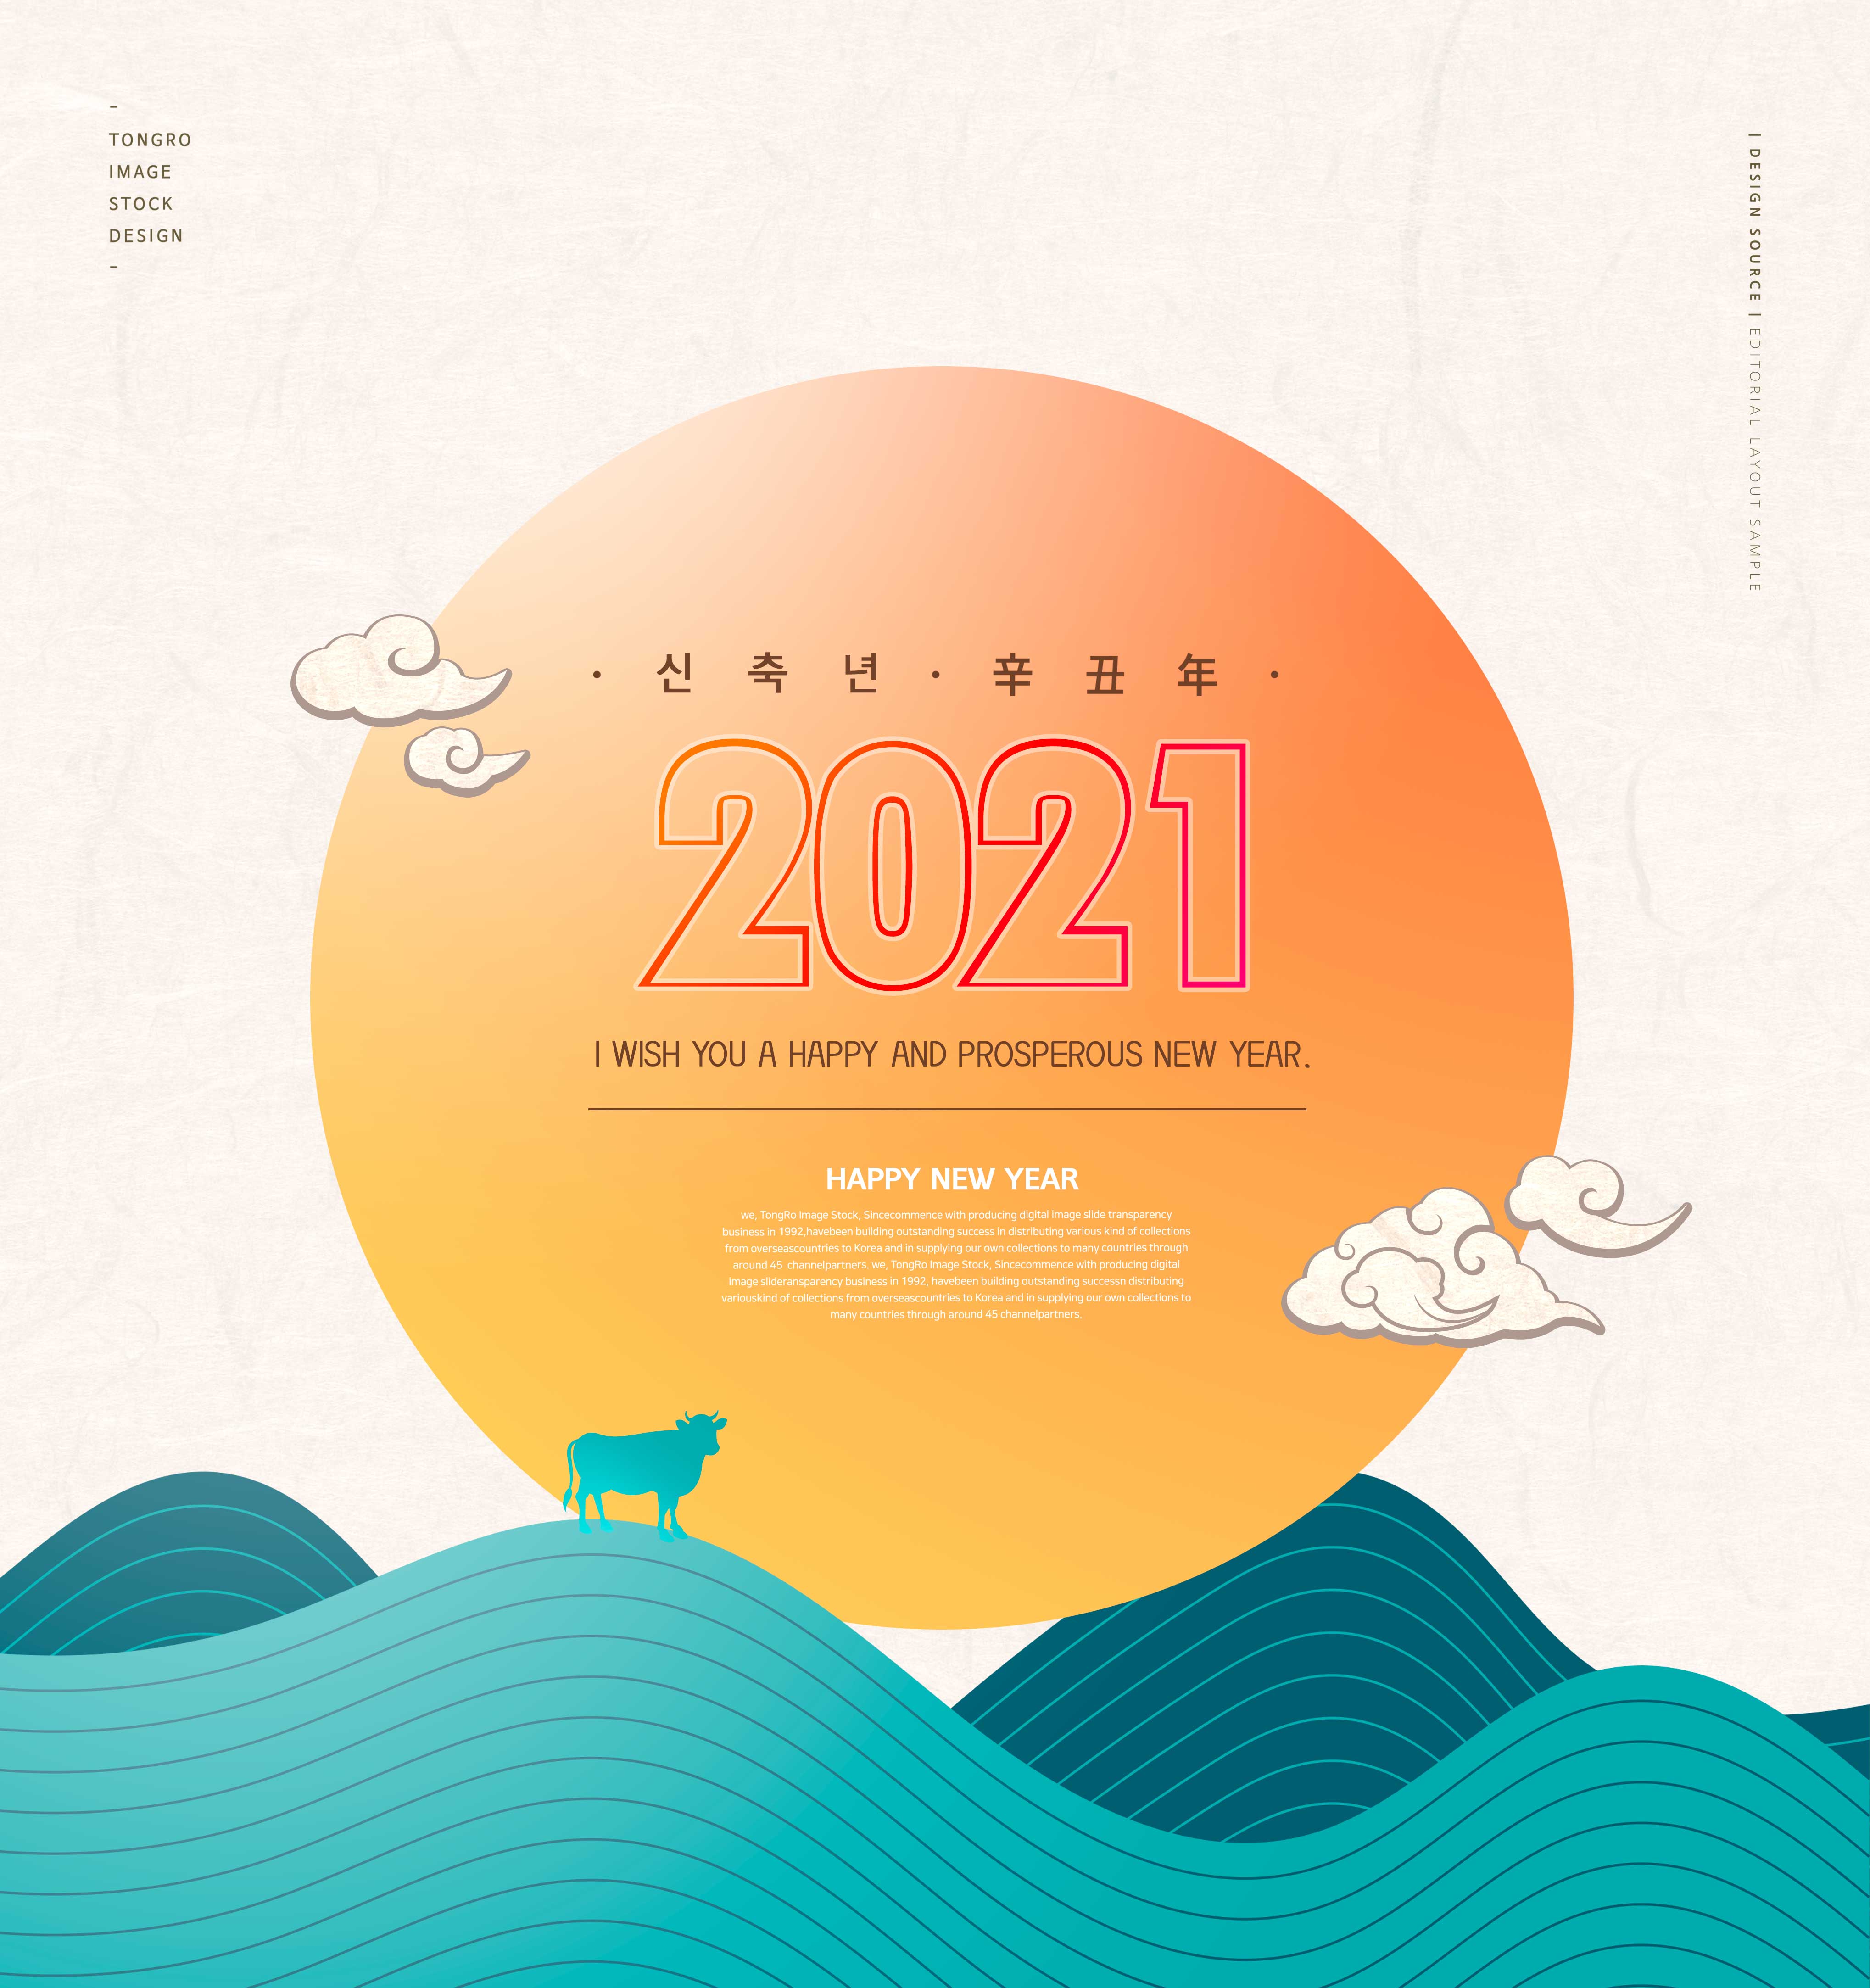 新年快乐主题创意2021牛年海报设计模板合集v2设计素材模板